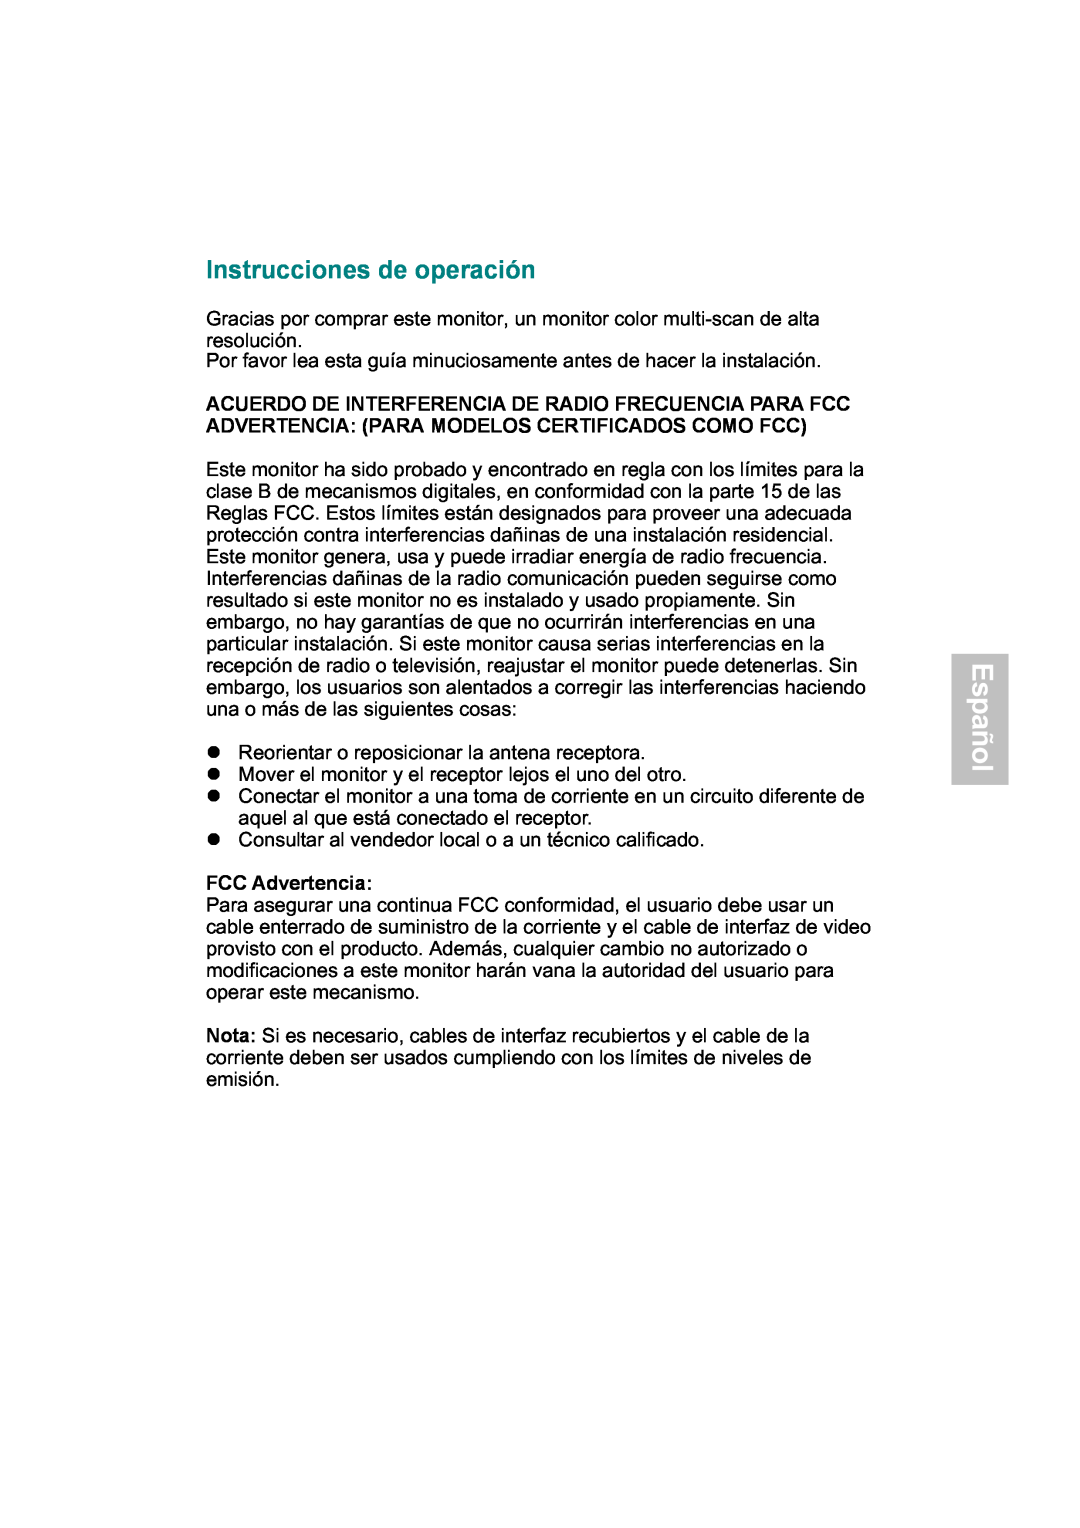 AOC 919Sw-1 manual Español, Instrucciones de operación, FCC Advertencia 